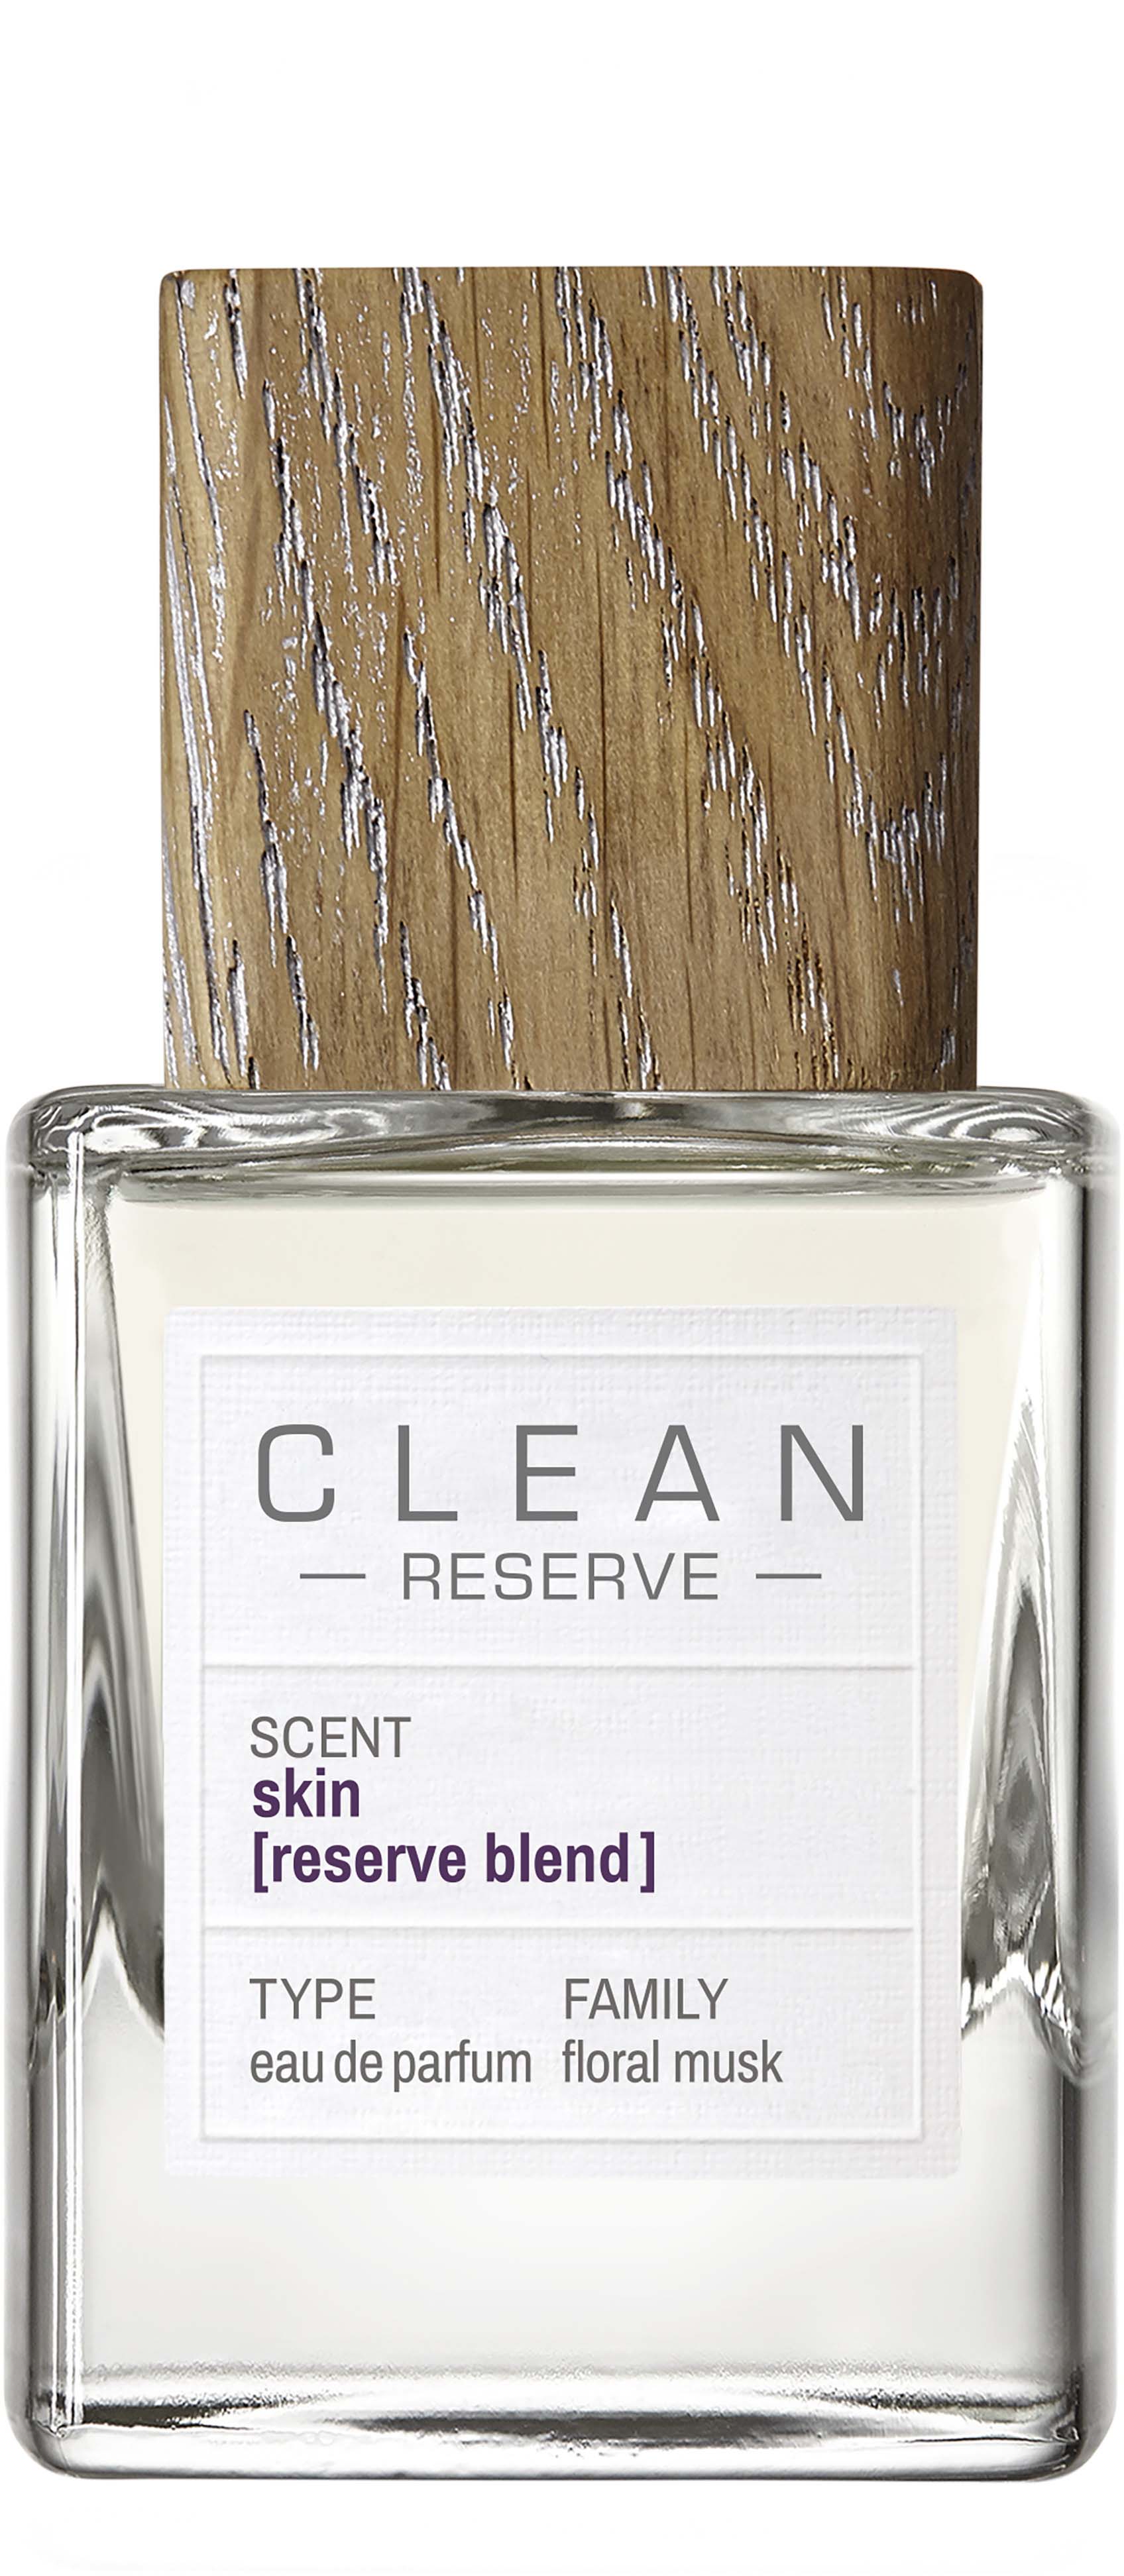 clean clean reserve - skin reserve blend woda perfumowana 30 ml   